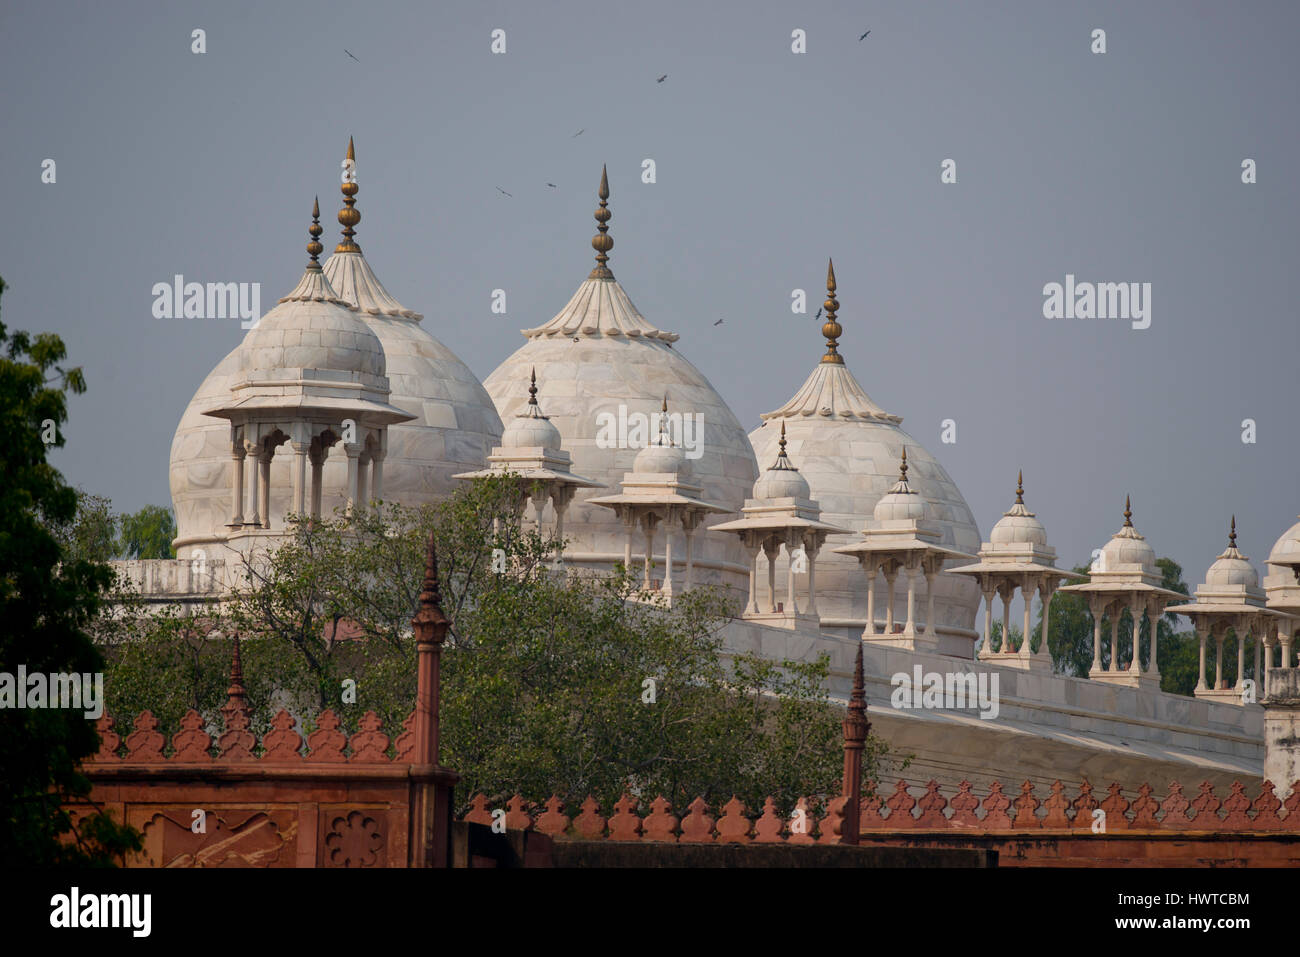 Archi a fort di Agra, magnifico palazzo fortificato in India. Questo maharajah residence è un sito patrimonio mondiale dell'Unesco Foto Stock